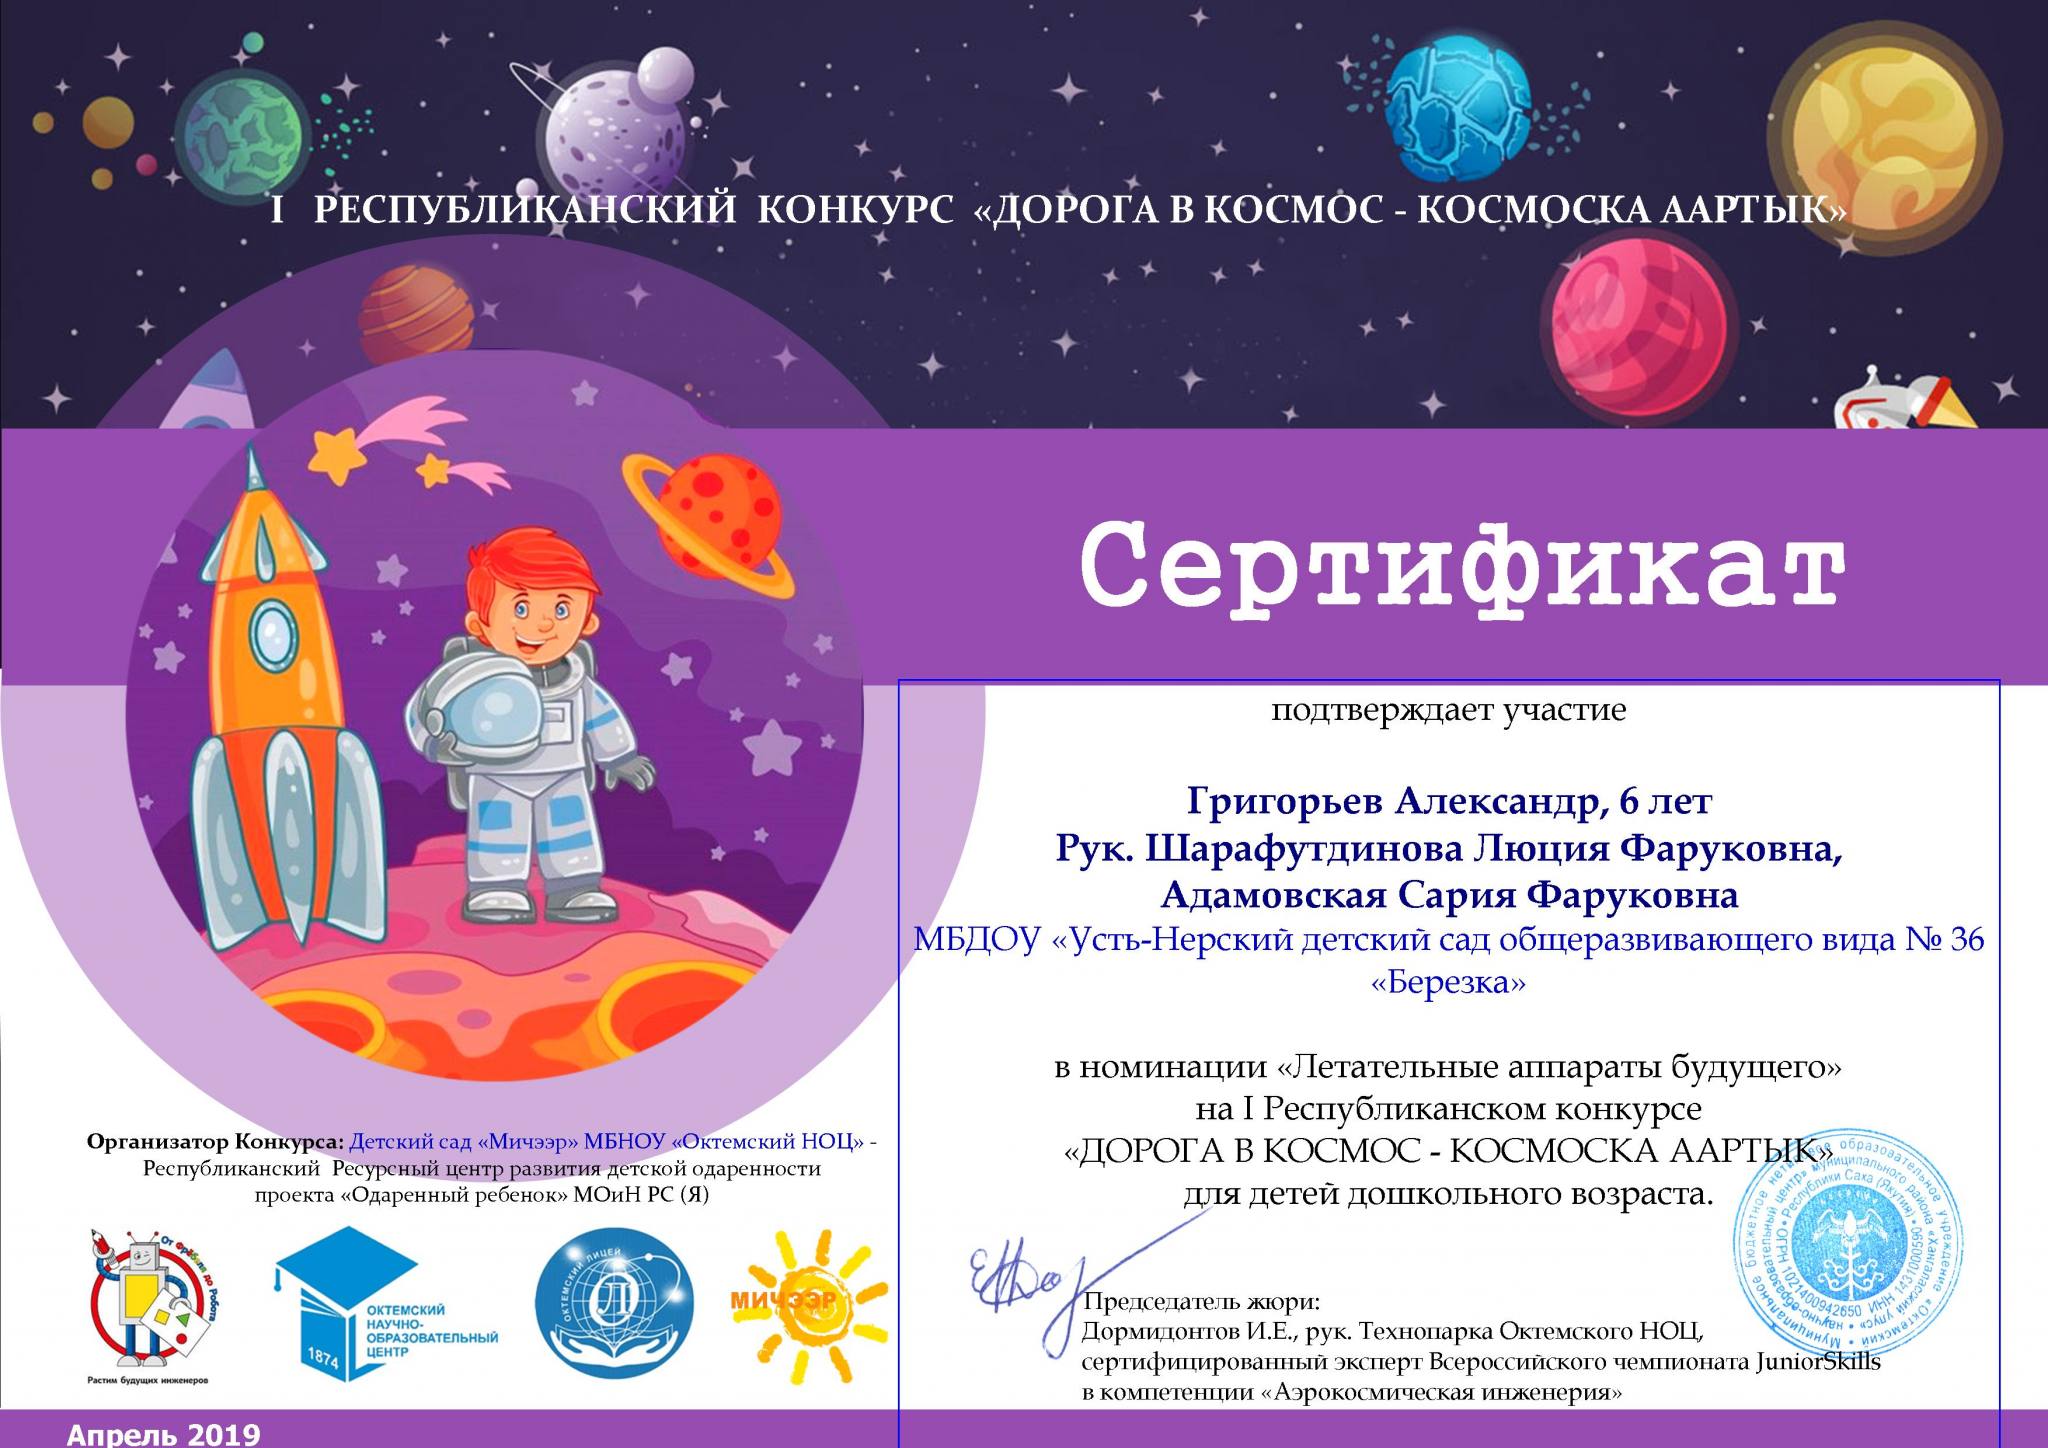 Сертификат про космос для детей